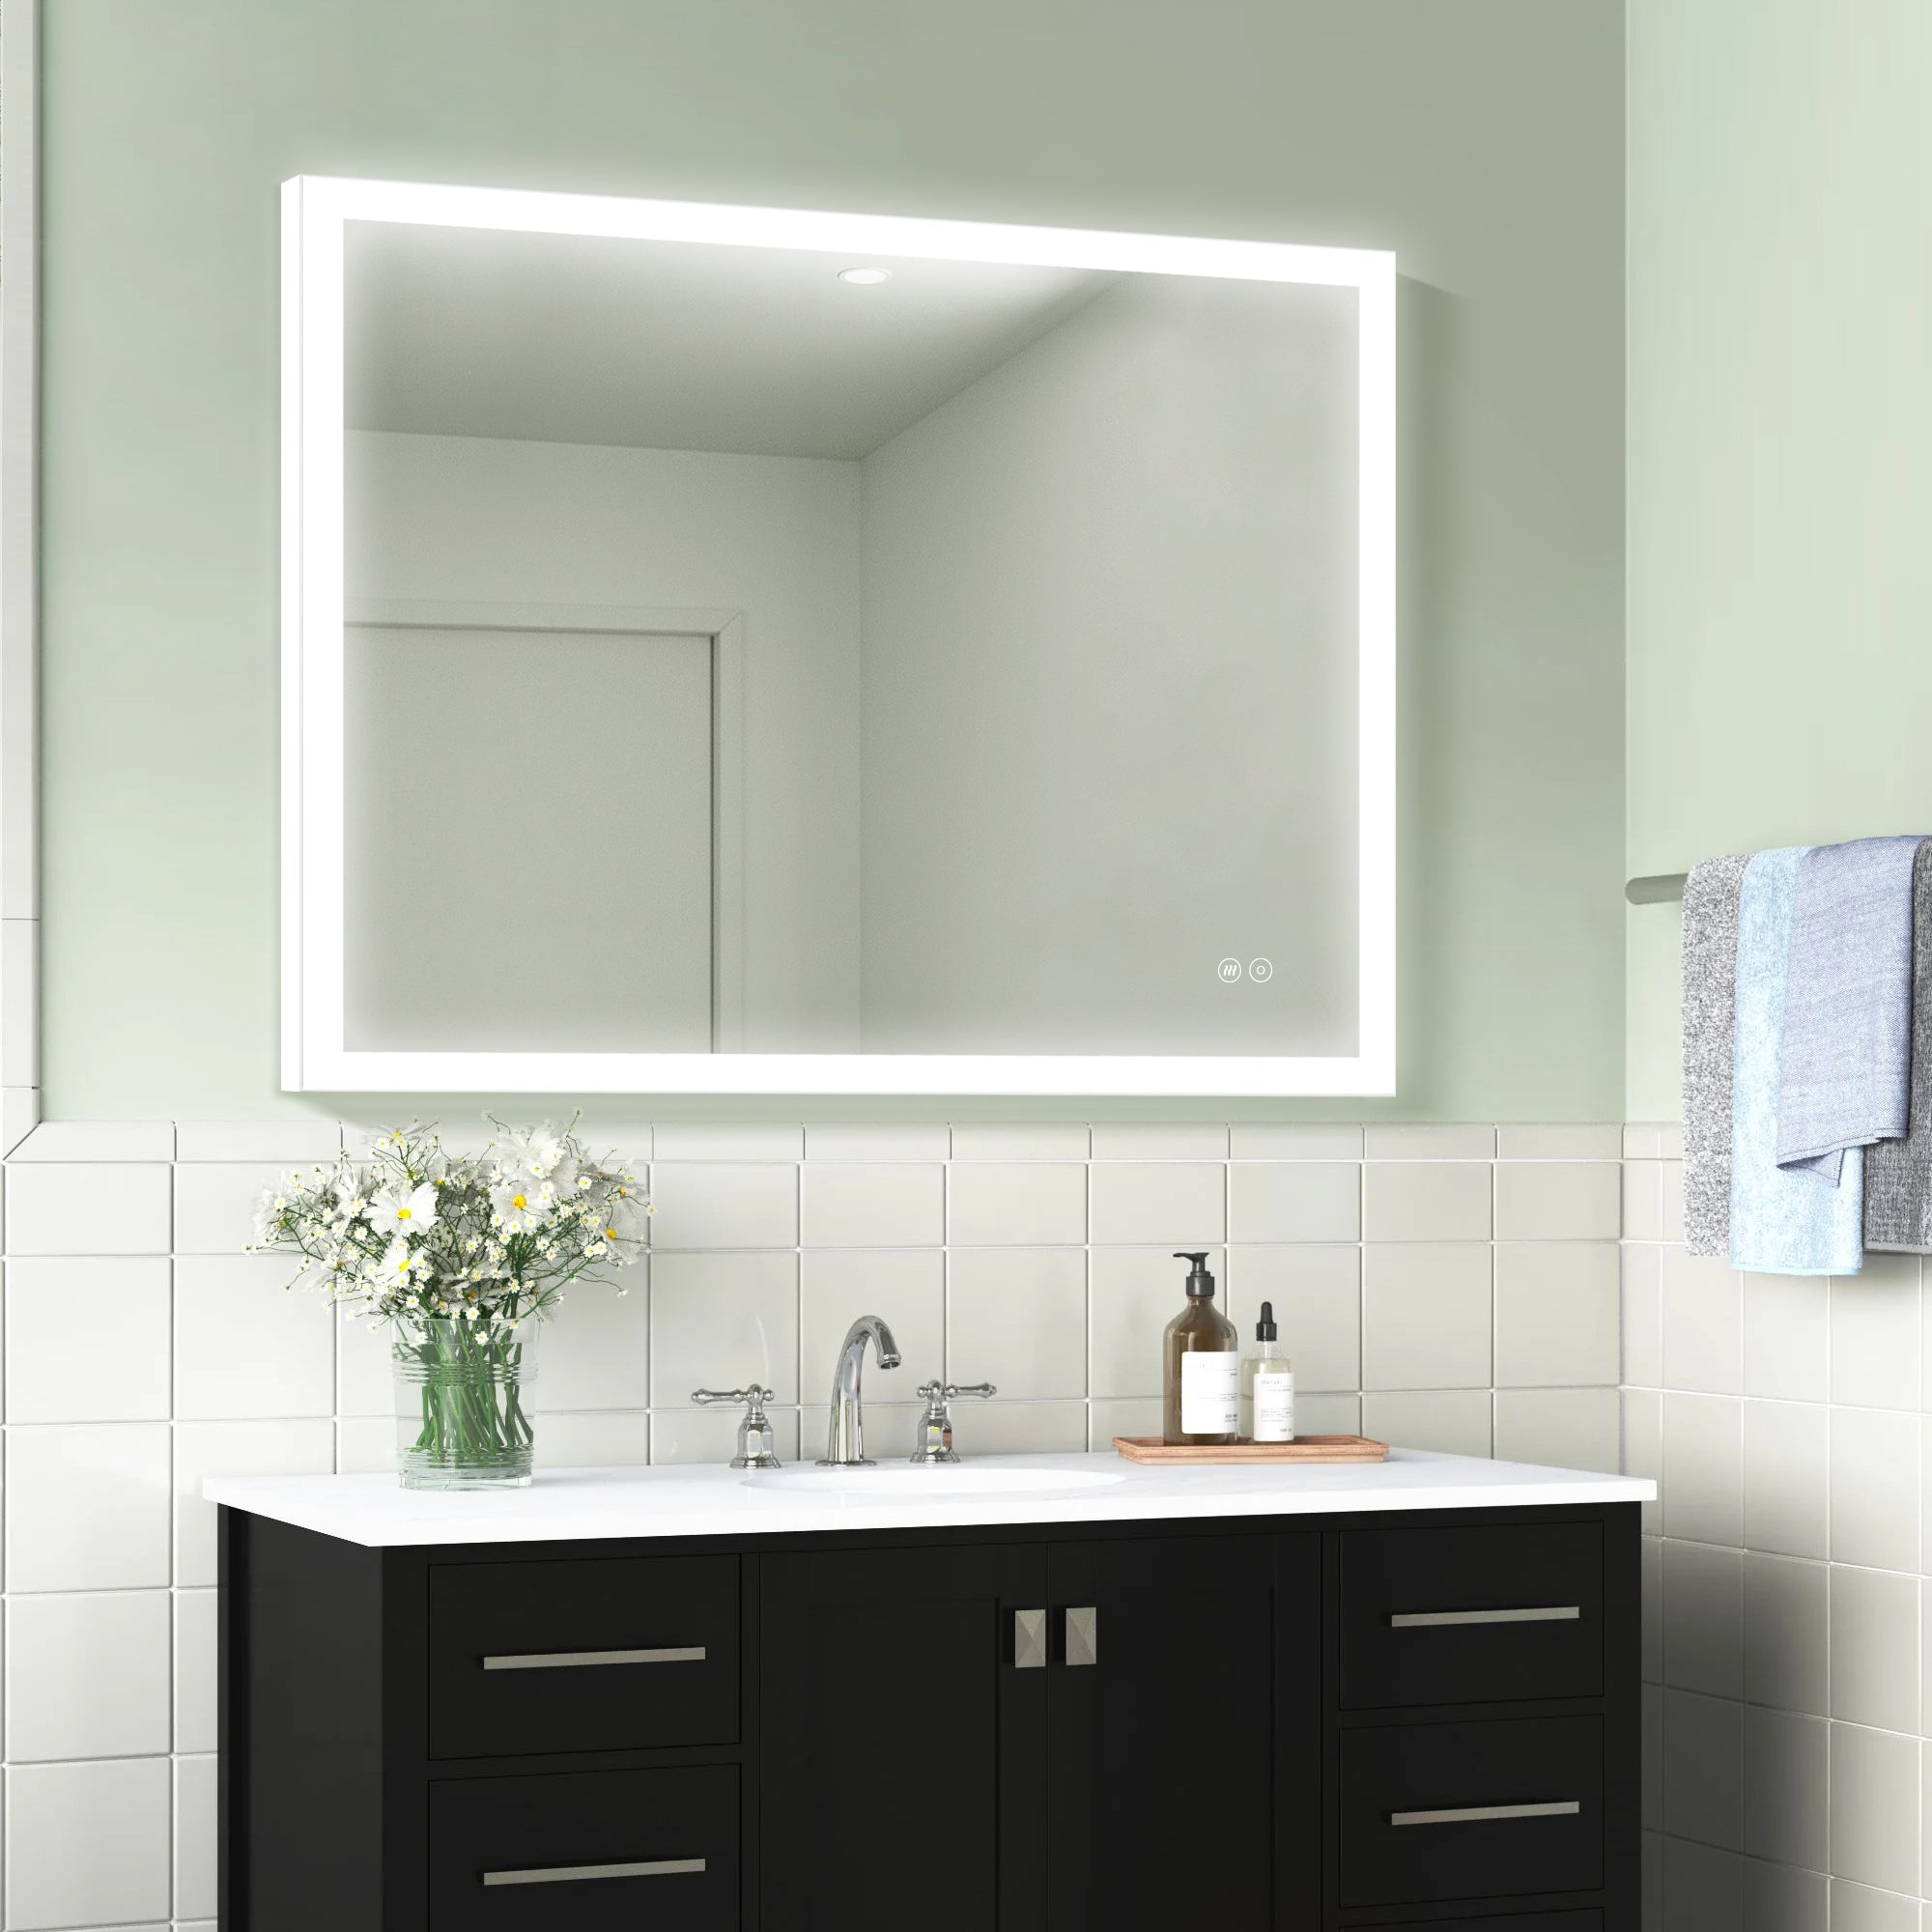 40 in. W x 32 in. H LED Light Mirror Rectangular Fog Free Frameless Bathroom Vanity Mirror